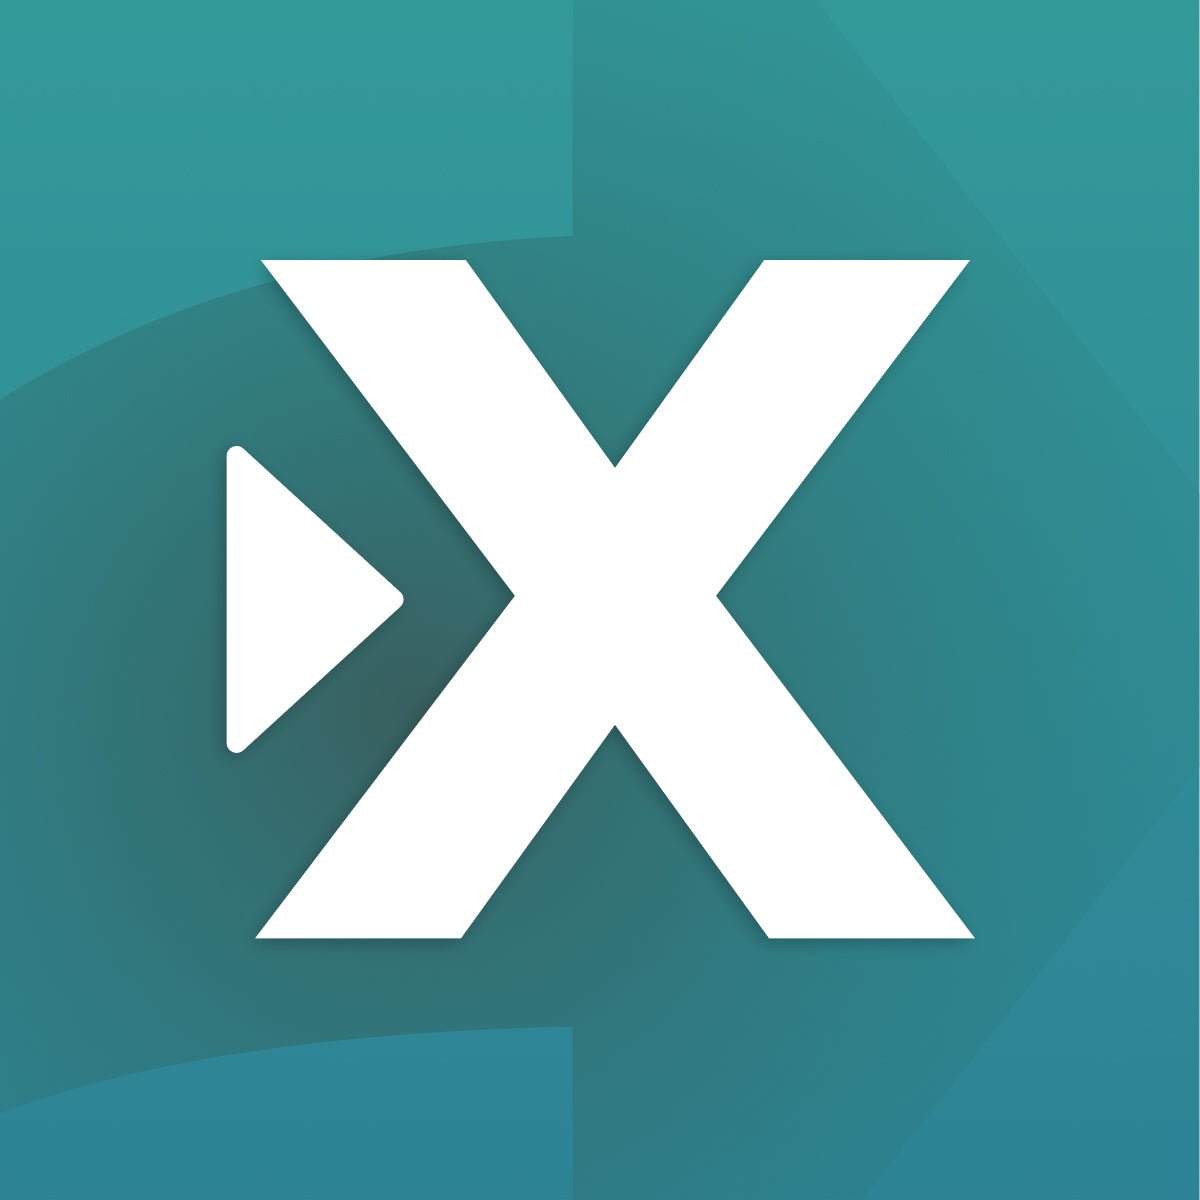 Judge.me AliExpress Reviews Shopify App